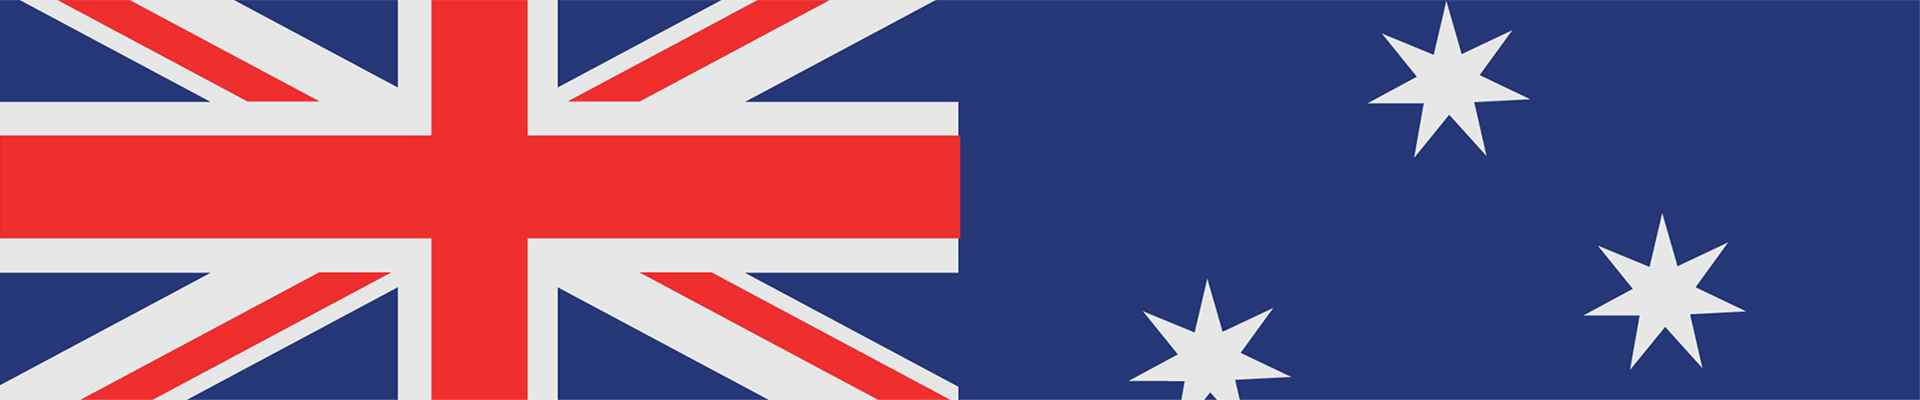 Une tranche du drapeau australien